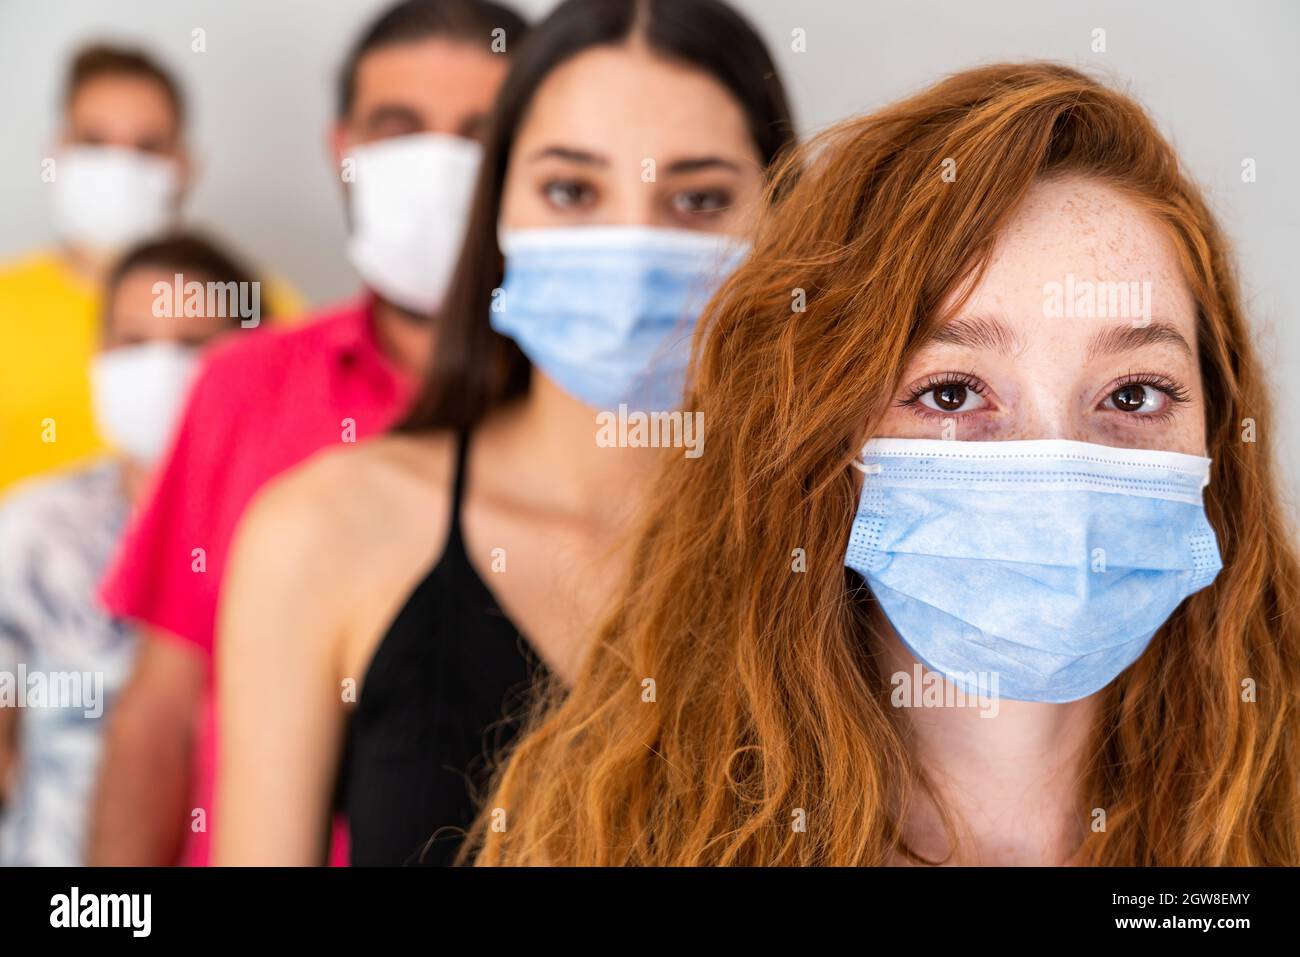 Gruppo di persone in attesa in coda con maschera protettiva in distanza sociale. Pandemia e concetto di assistenza sanitaria. Foto di alta qualità Foto Stock